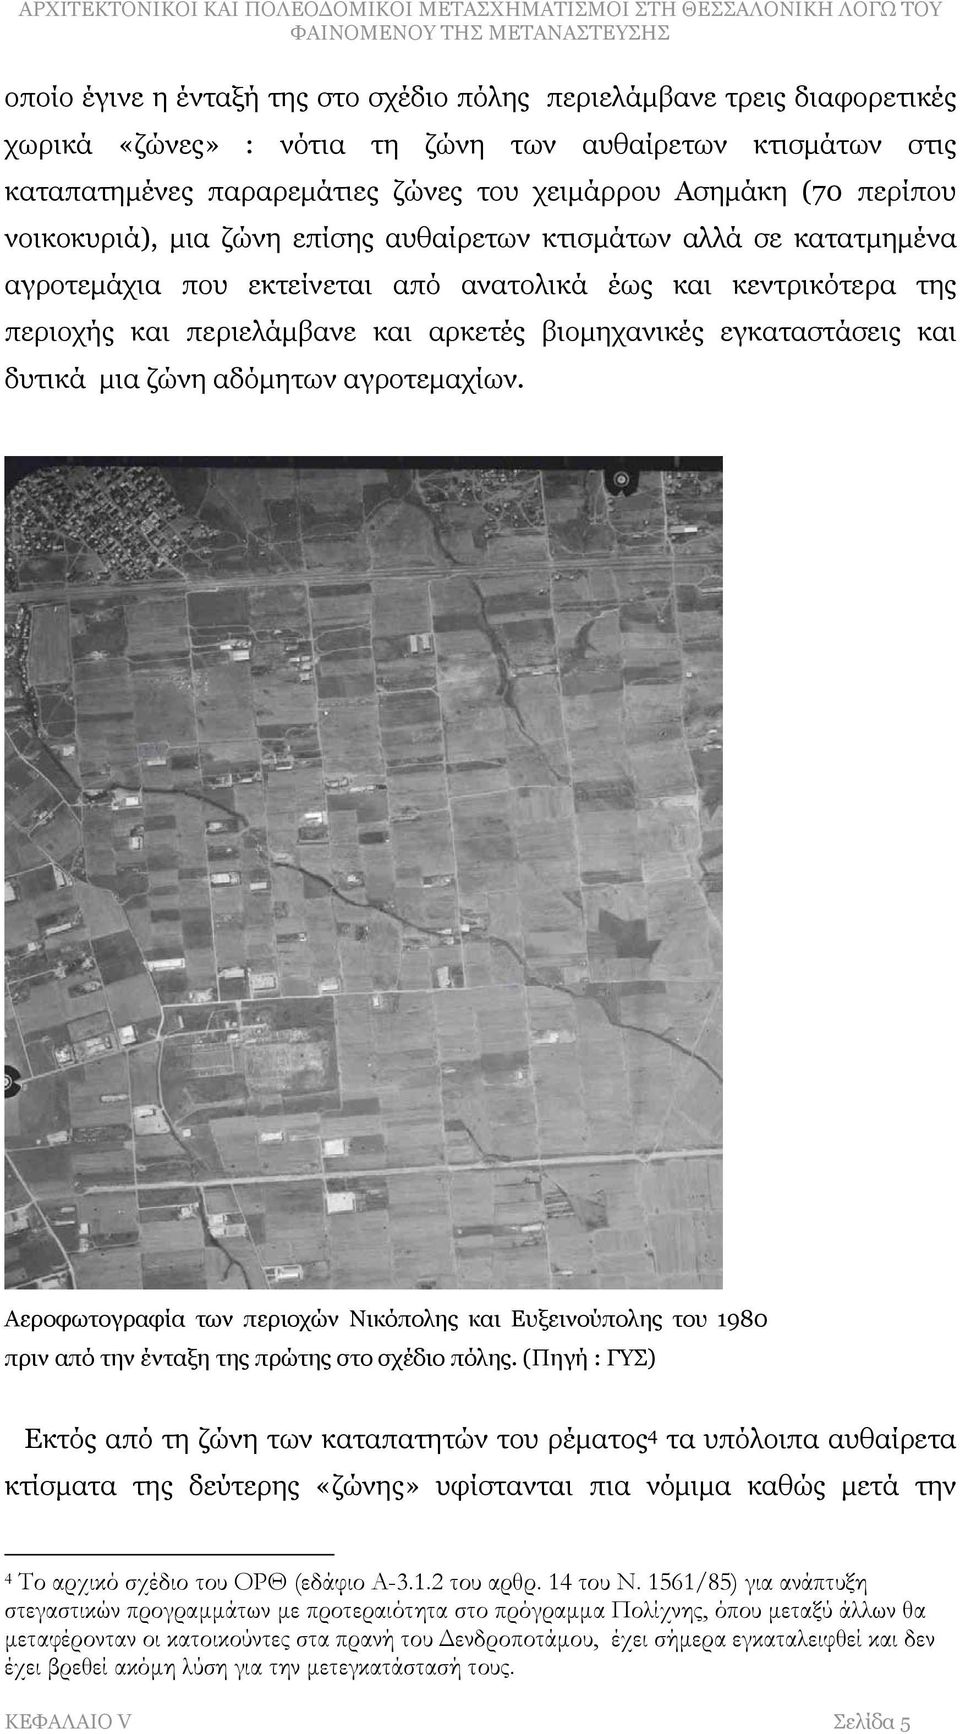 εγκαταστάσεις και δυτικά μια ζώνη αδόμητων αγροτεμαχίων. Αεροφωτογραφία των περιοχών Νικόπολης και Ευξεινούπολης του 1980 πριν από την ένταξη της πρώτης στο σχέδιο πόλης.